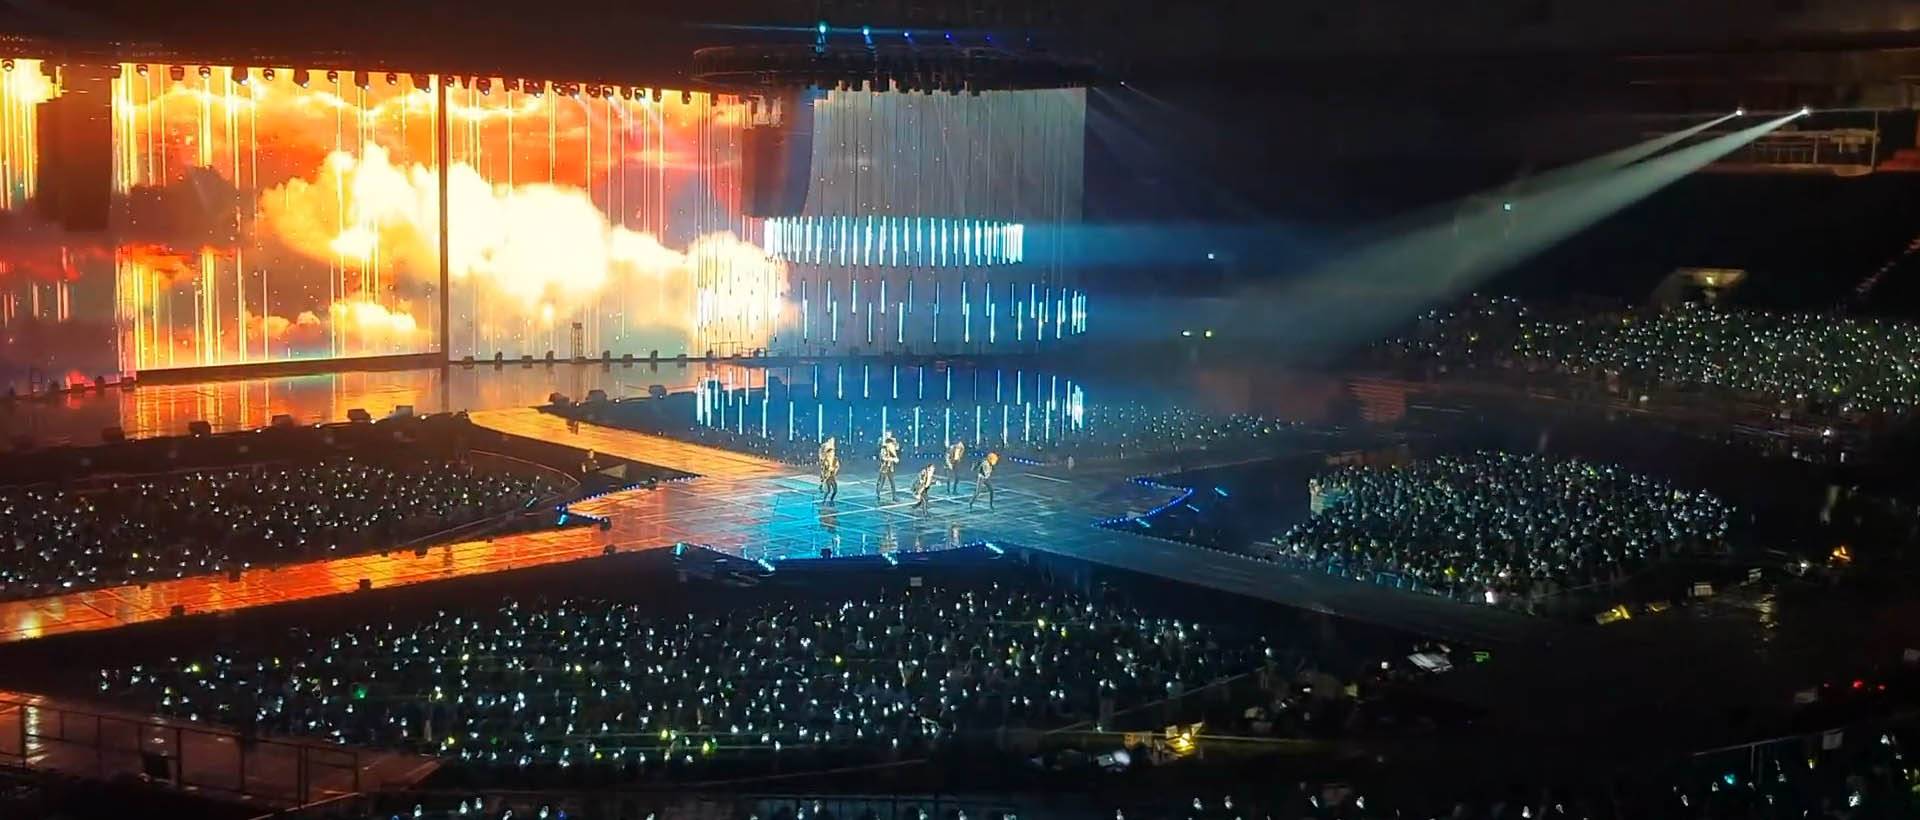 GOT7 2019 WORLD TOUR 'KEEP SPINNING' SPOT in Seoul, Korea